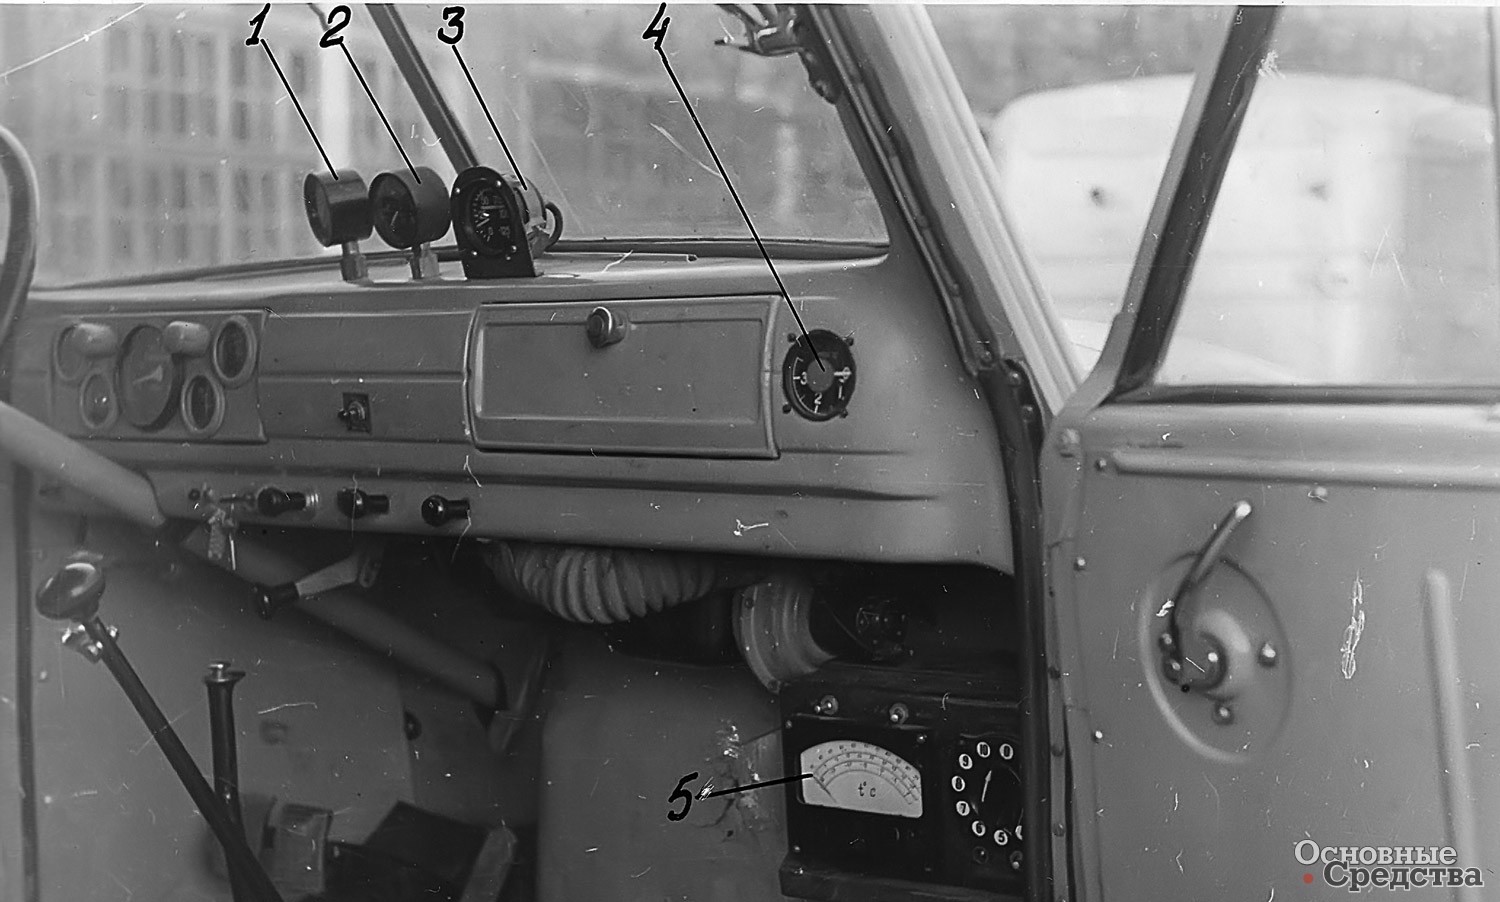 Расположение приборов в кабине рефрижераторного автомобиля ГАЗ-51: 1 – манометр, показывающий давление сжиженного метана в бачке; 2 – манометр, показывающий давление метана после первой ступени редуктора; 3 – дистанционный термометр; 4 – термометр термоэлектрический; 5 – указатель электрического термометра сопротивлений ЭТ-2